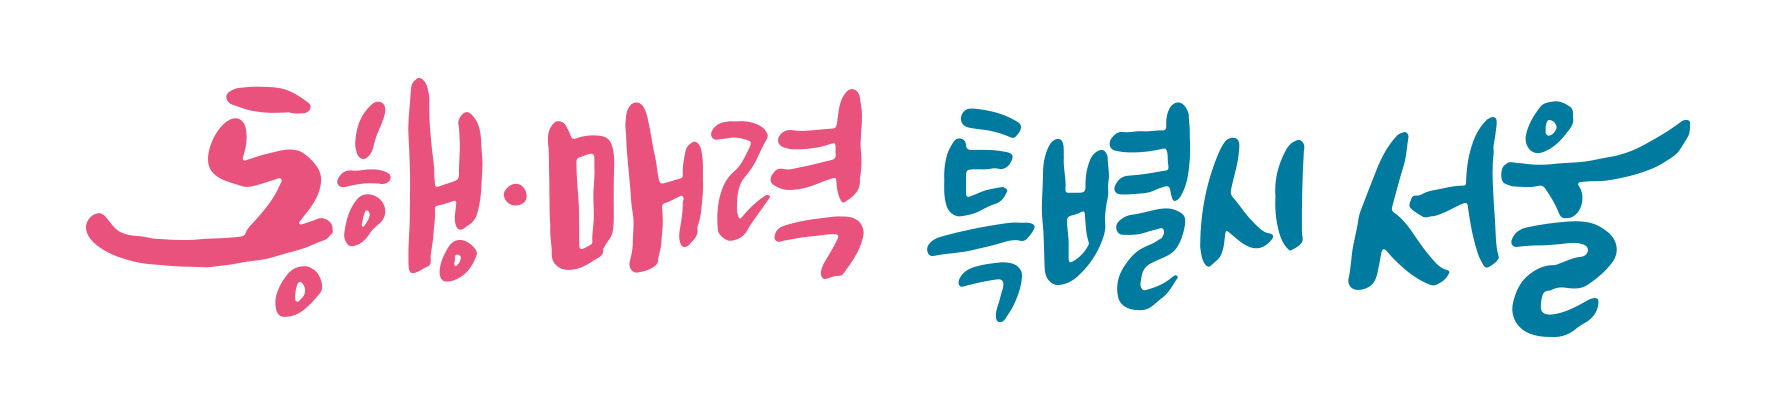 동행·매력 특별시 서울→서울특별시 홈페이지로 이동합니다.